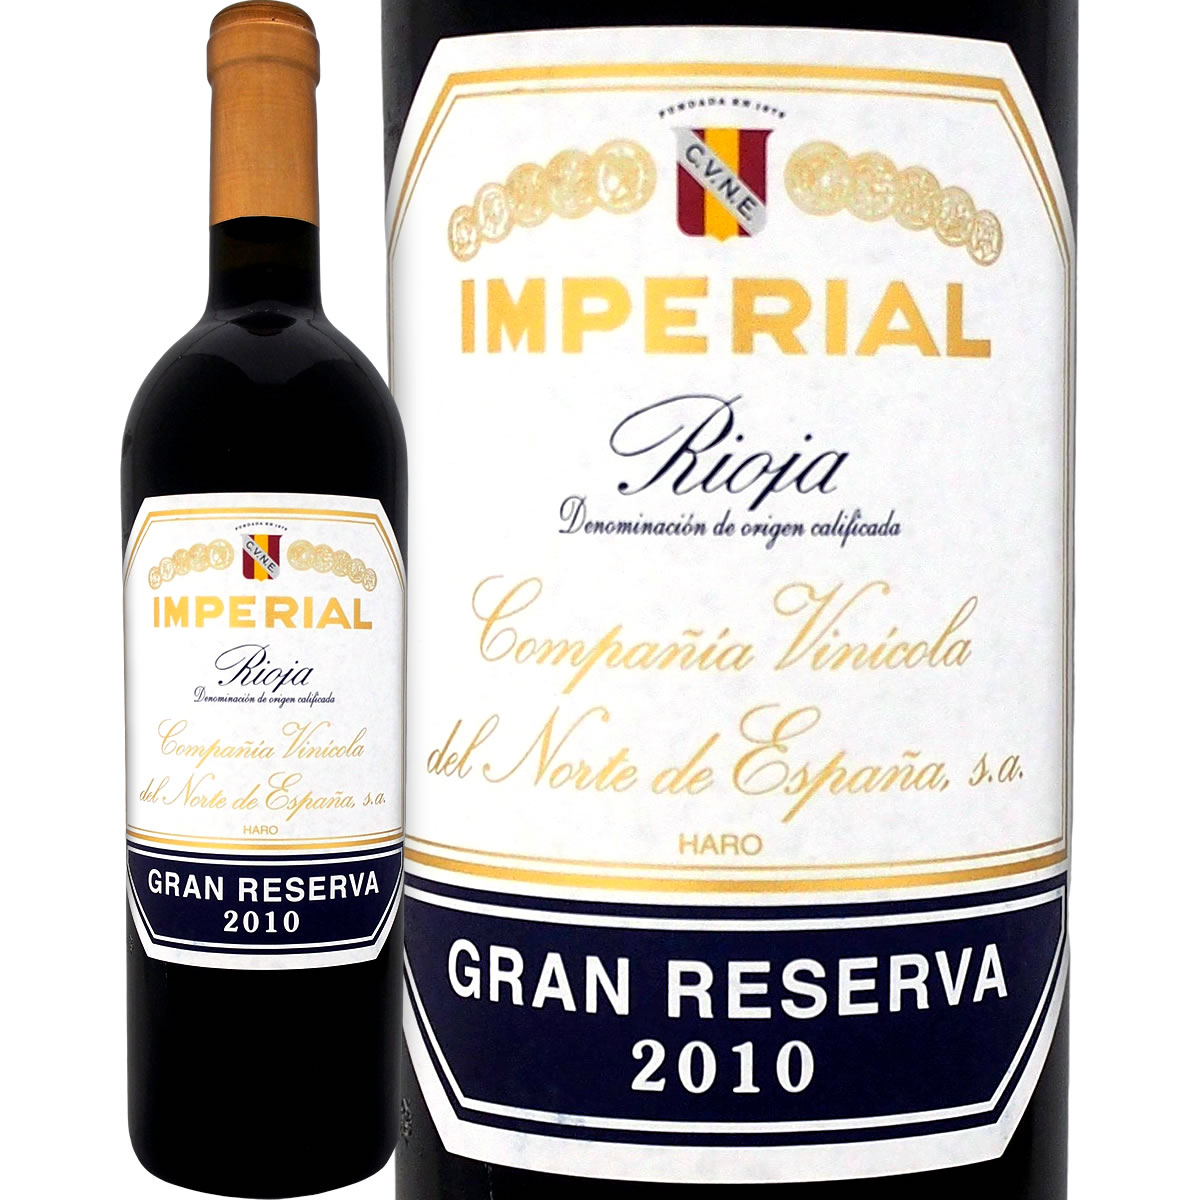 クネ・インペリアル・グラン・レセルバ 2010【スペイン】【赤ワイン